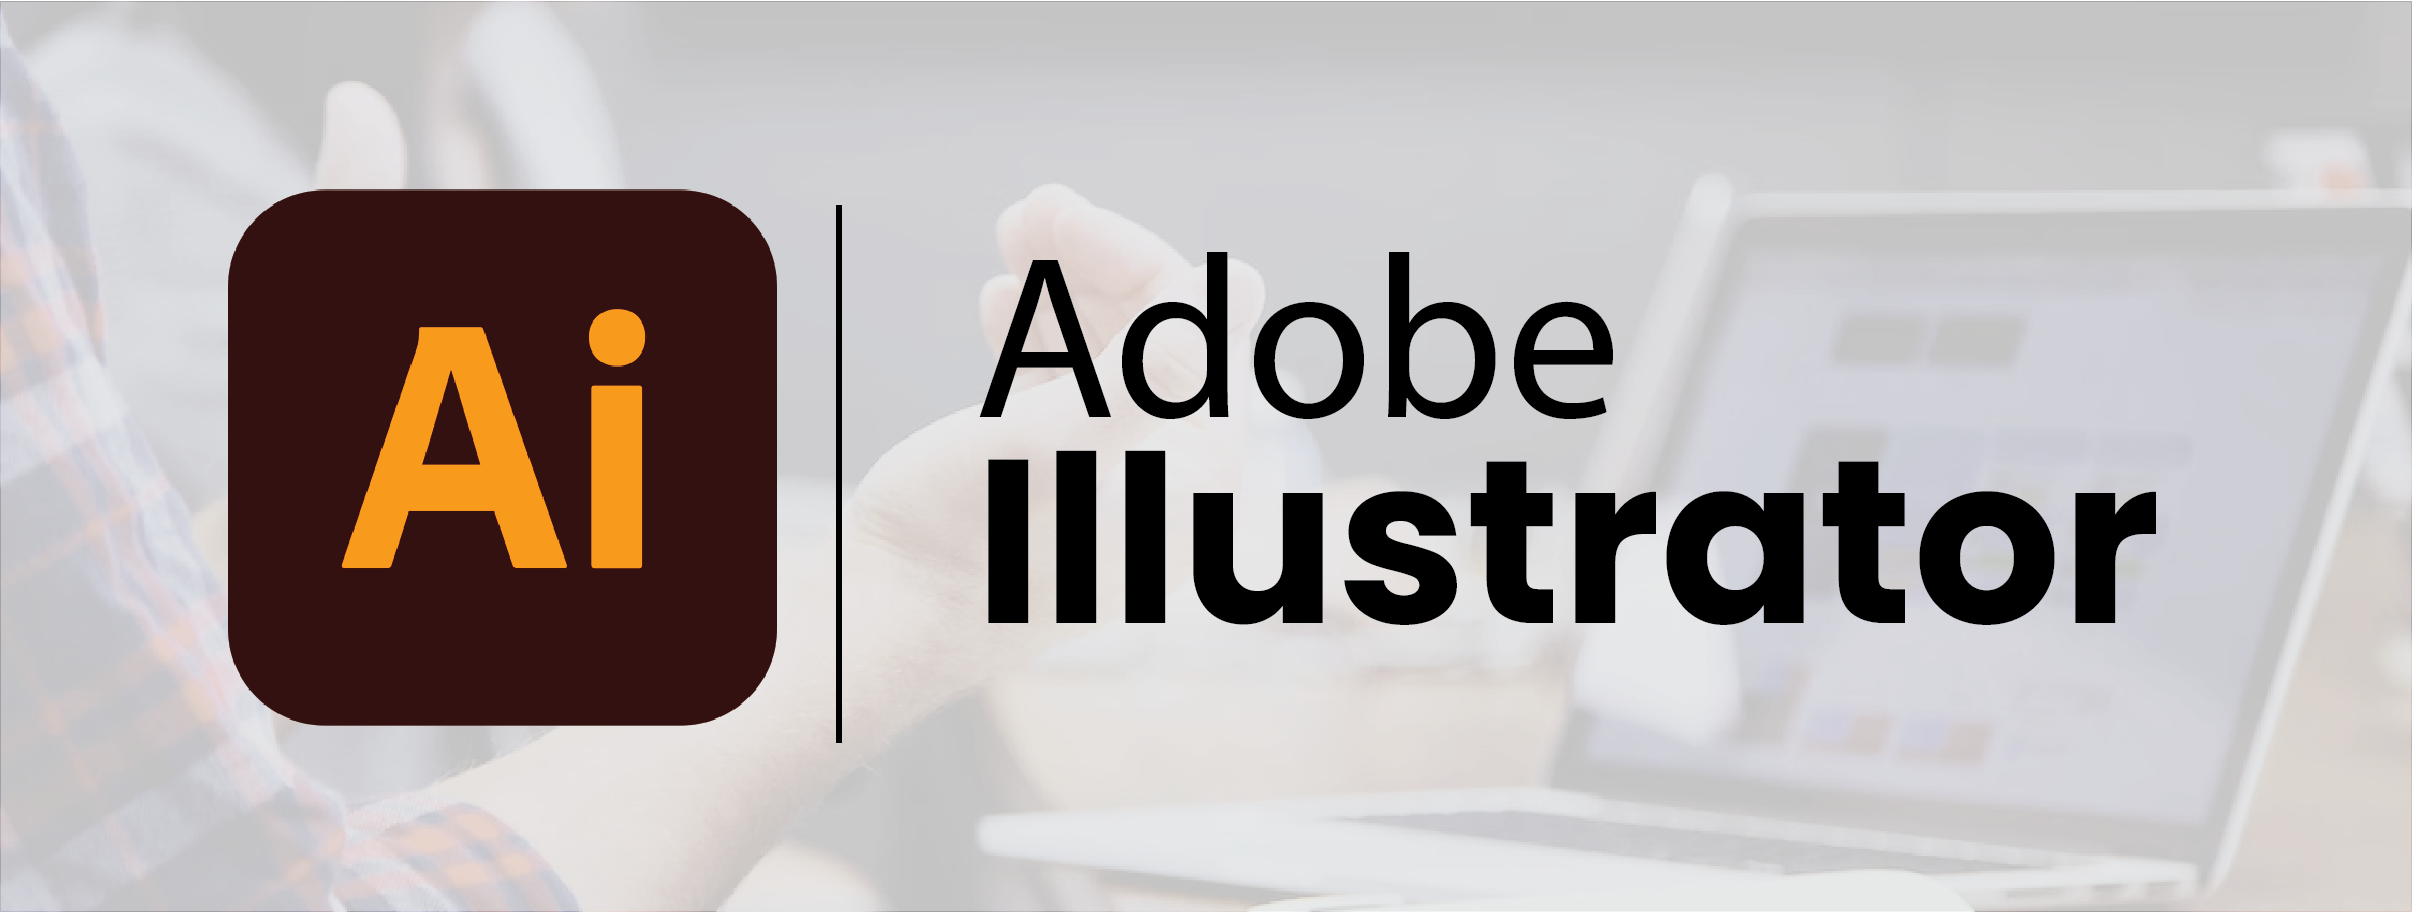 Best Adobe Illustrator Training in Laxmi Nagar Delhi | Adobe ...